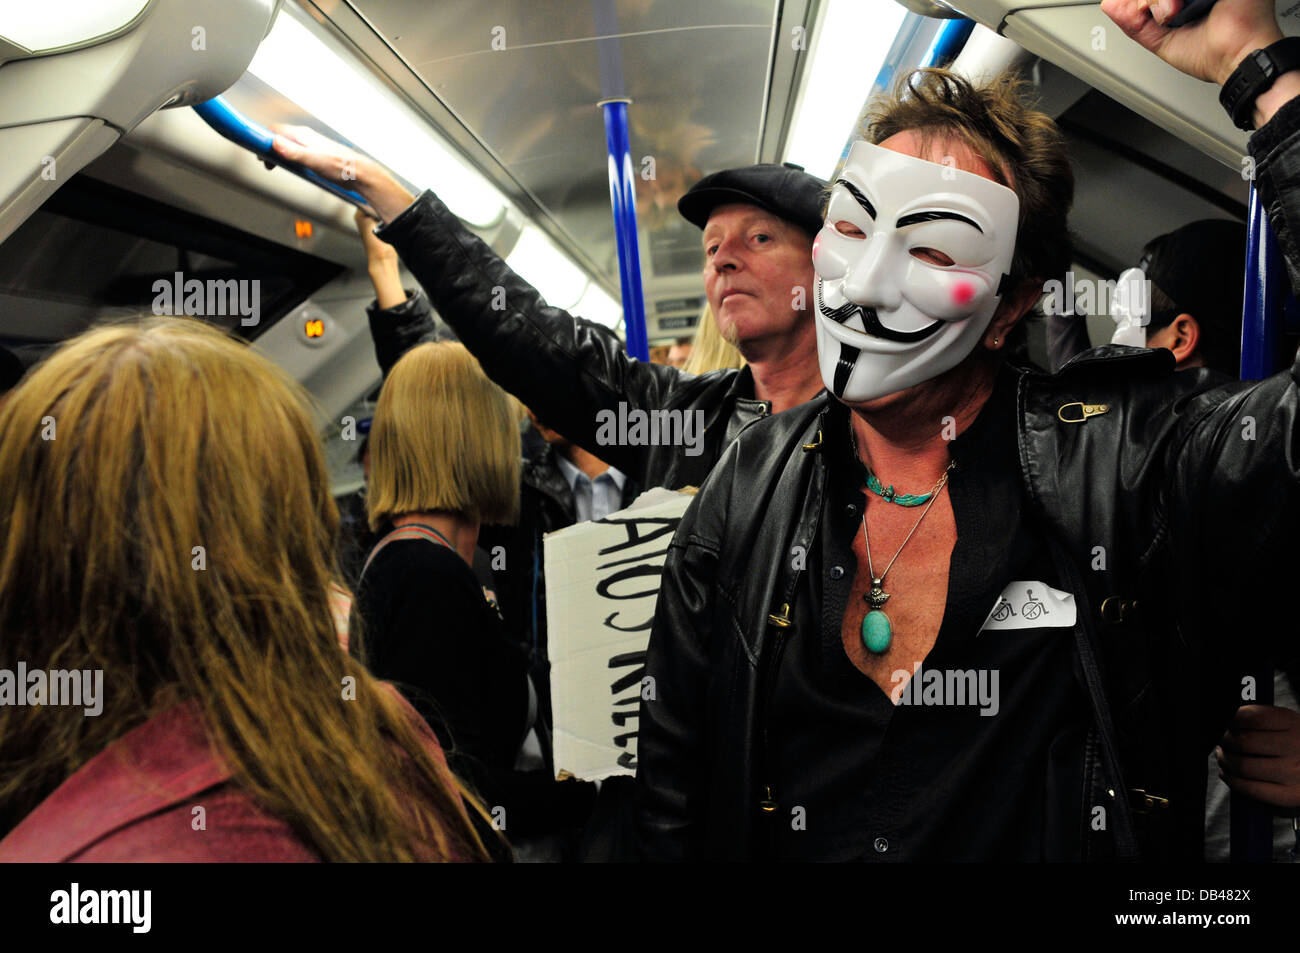 Ein Mann mit einem anonymen Maske fährt mit der u-Bahn, London, UK Stockfoto